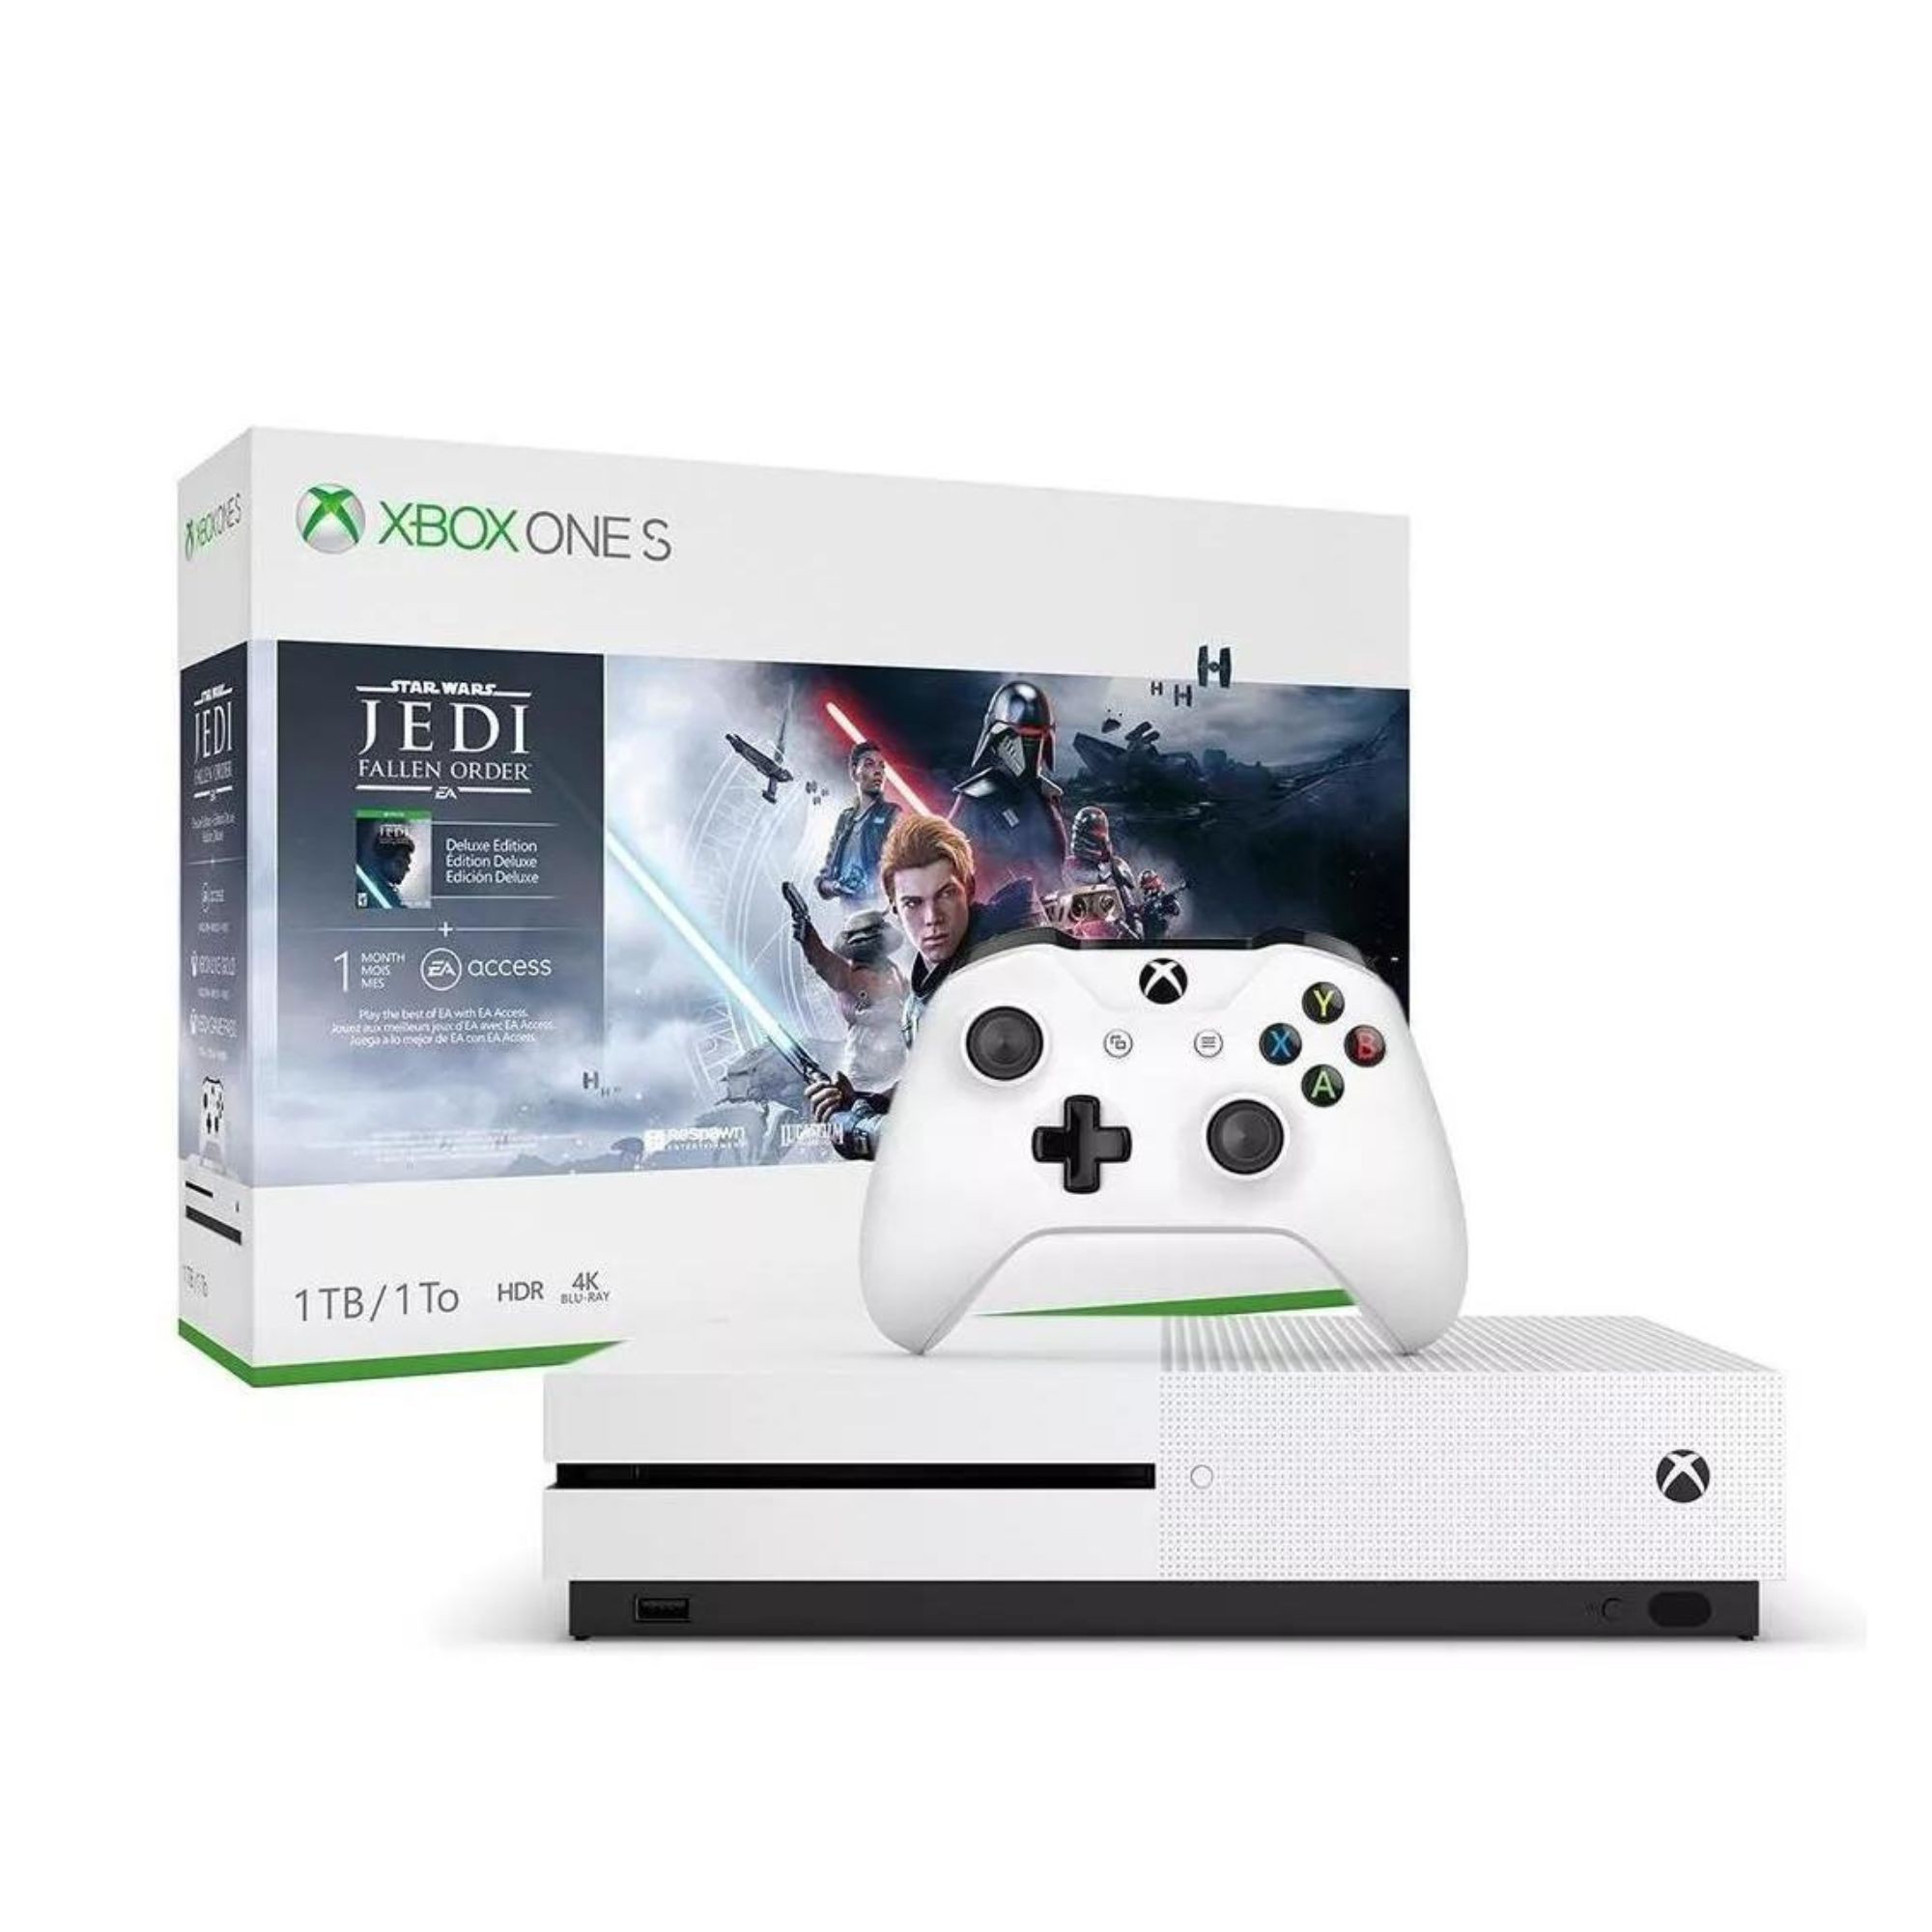 Xbox One S Microsoft 1TB 4K Ultra HD HDR 1 Jogo 1 Mes de Xbox